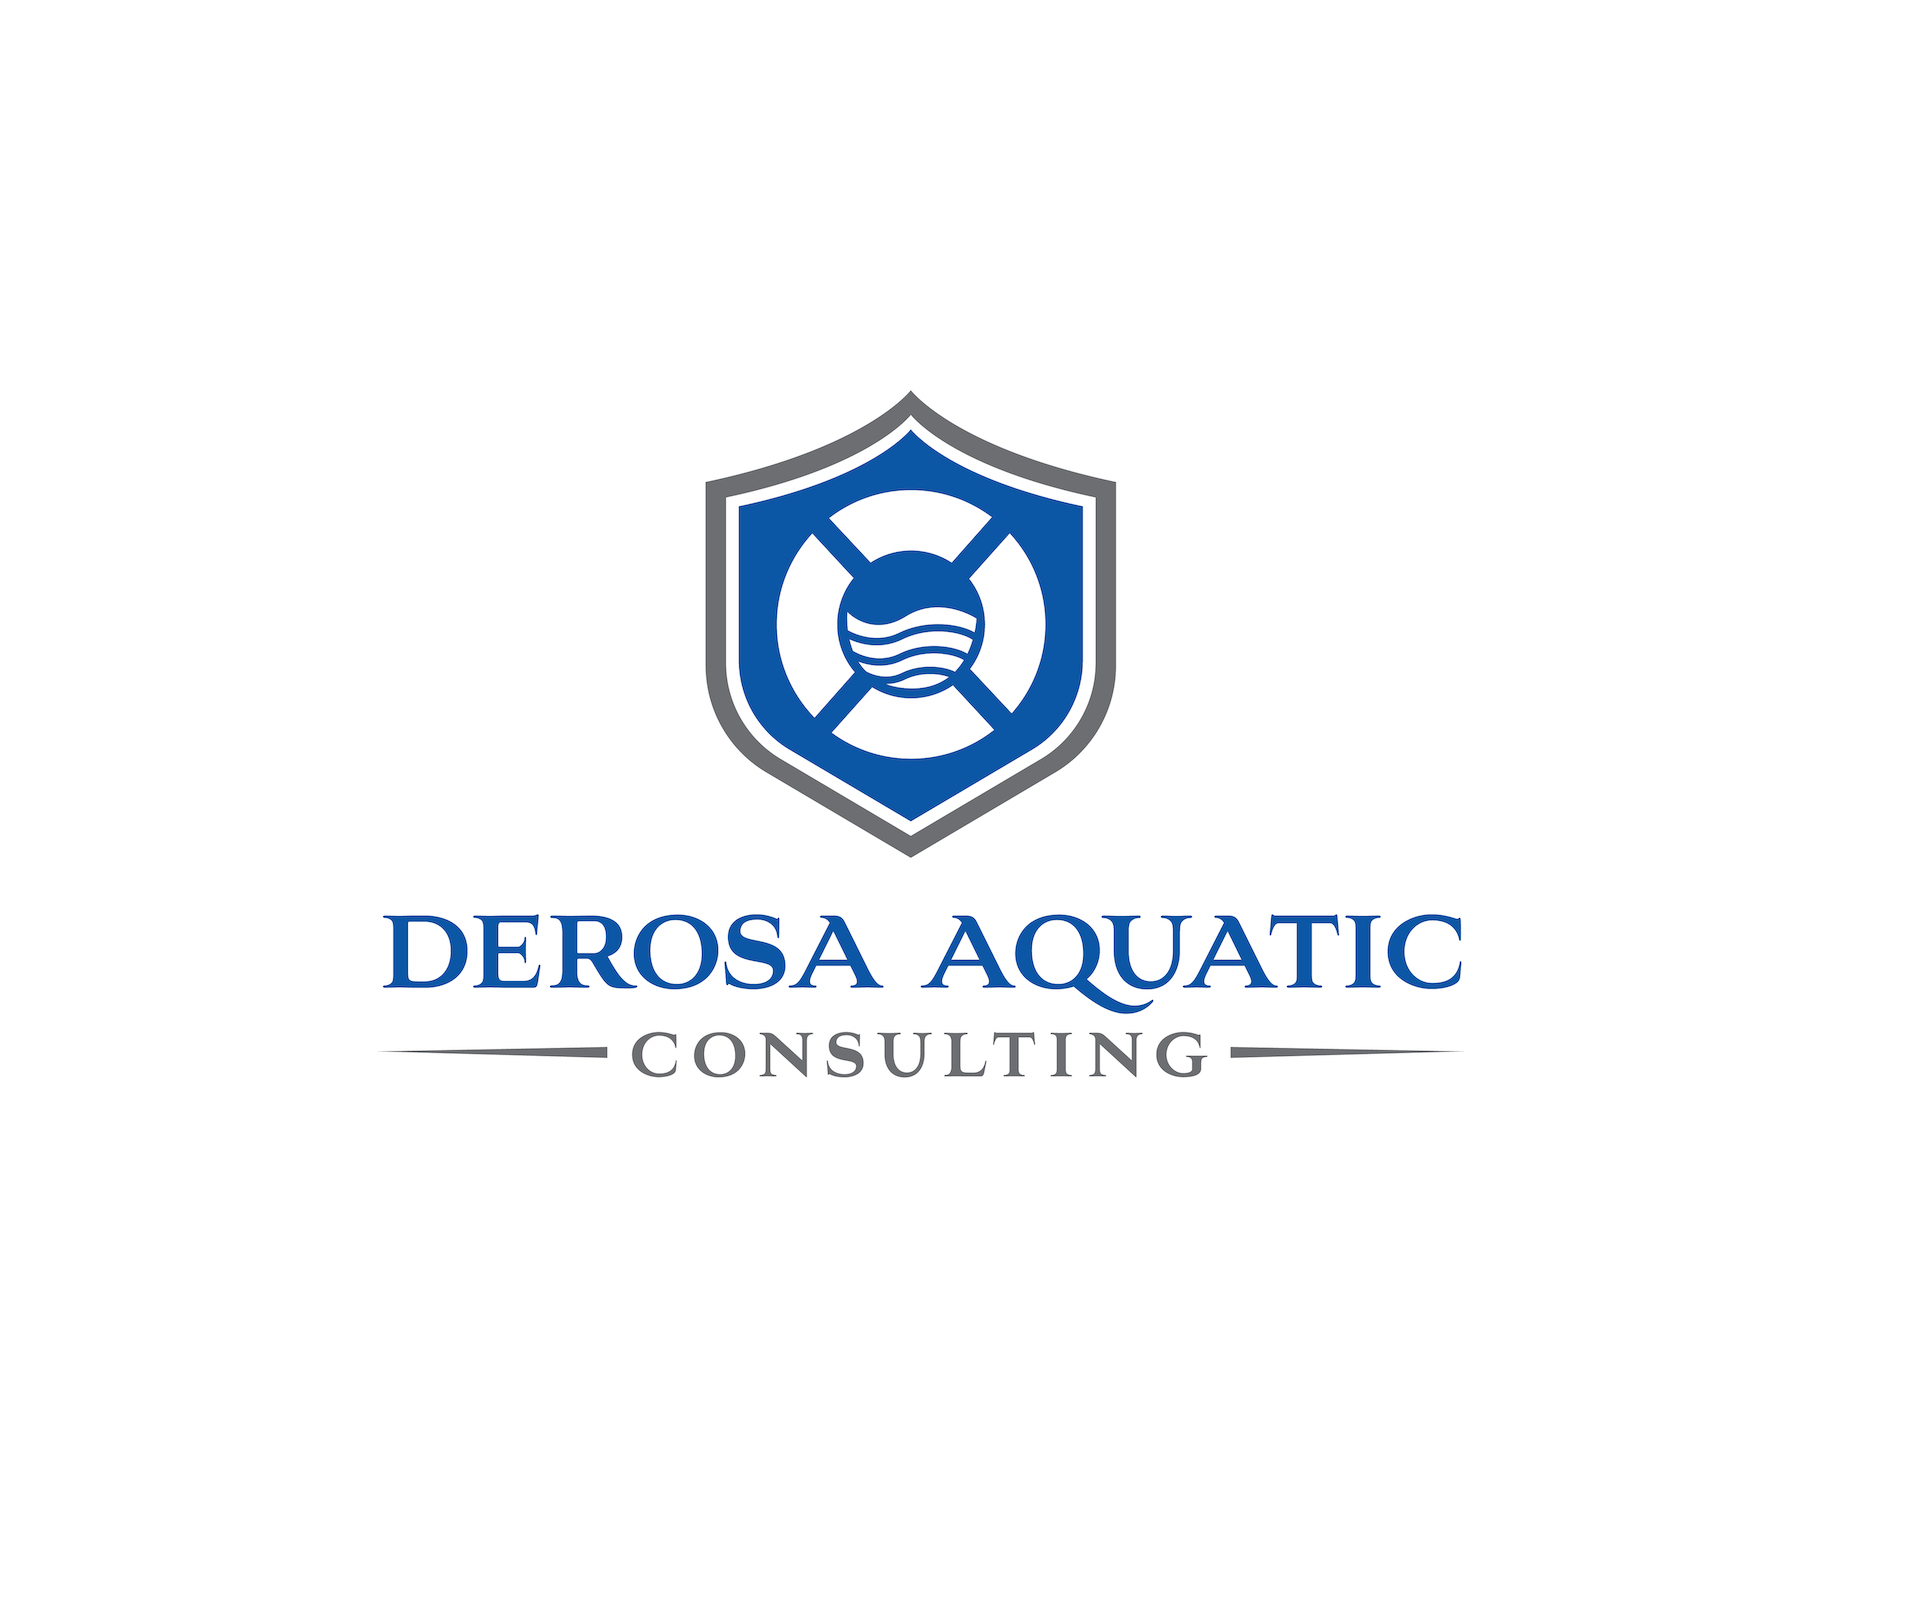 DeRosa Aquatic Consulting